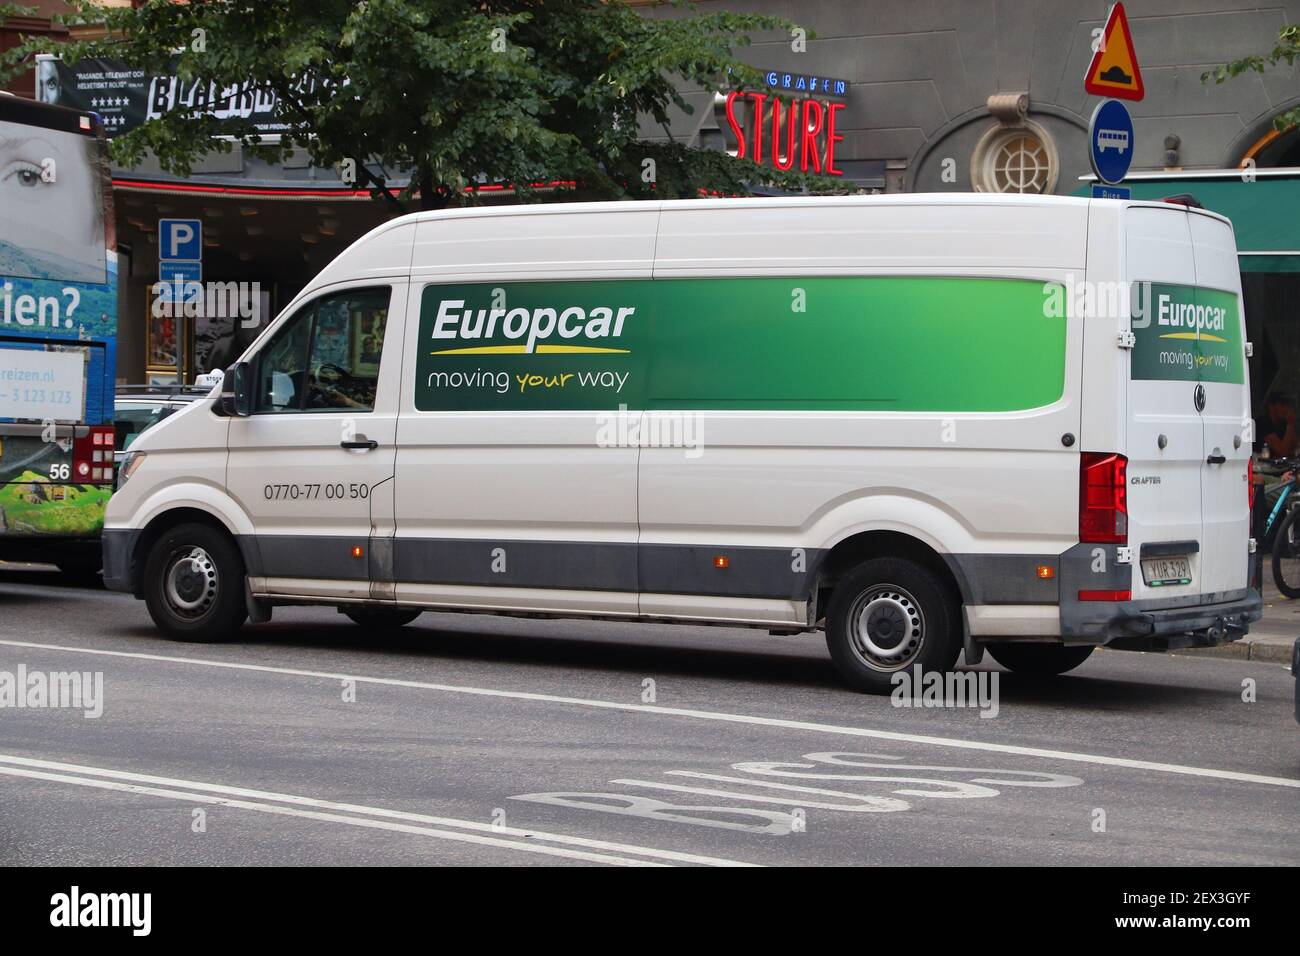 Europcar rental Banque de photographies et d'images à haute résolution -  Alamy